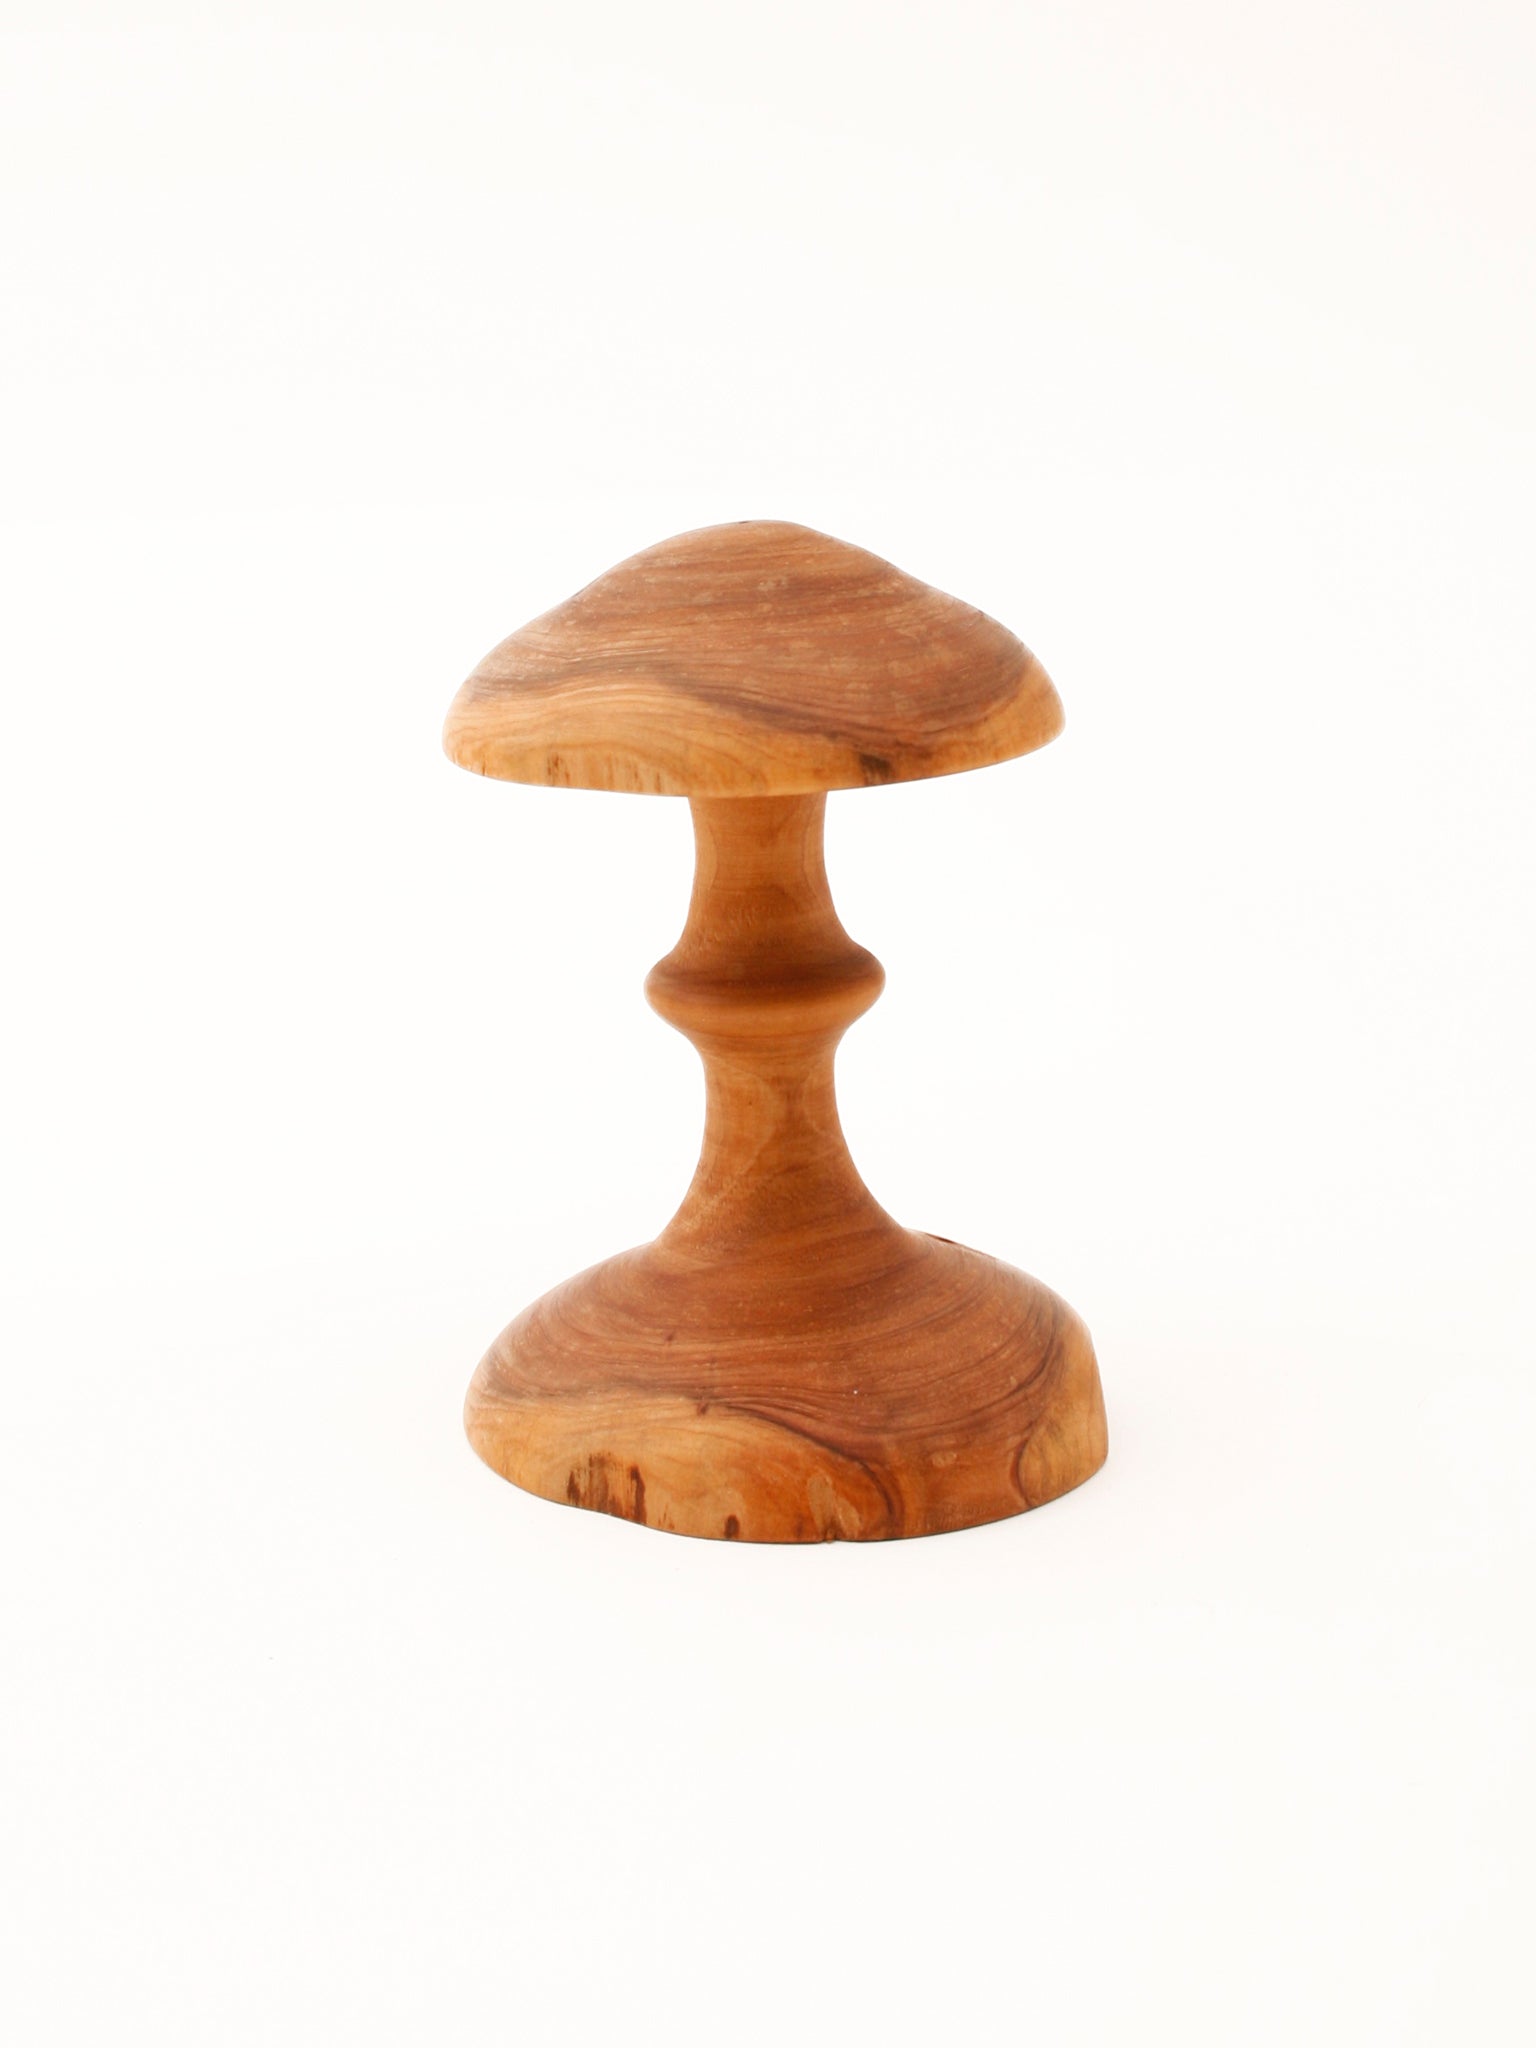 Wooden Mushroom, hand-carved, Porcini